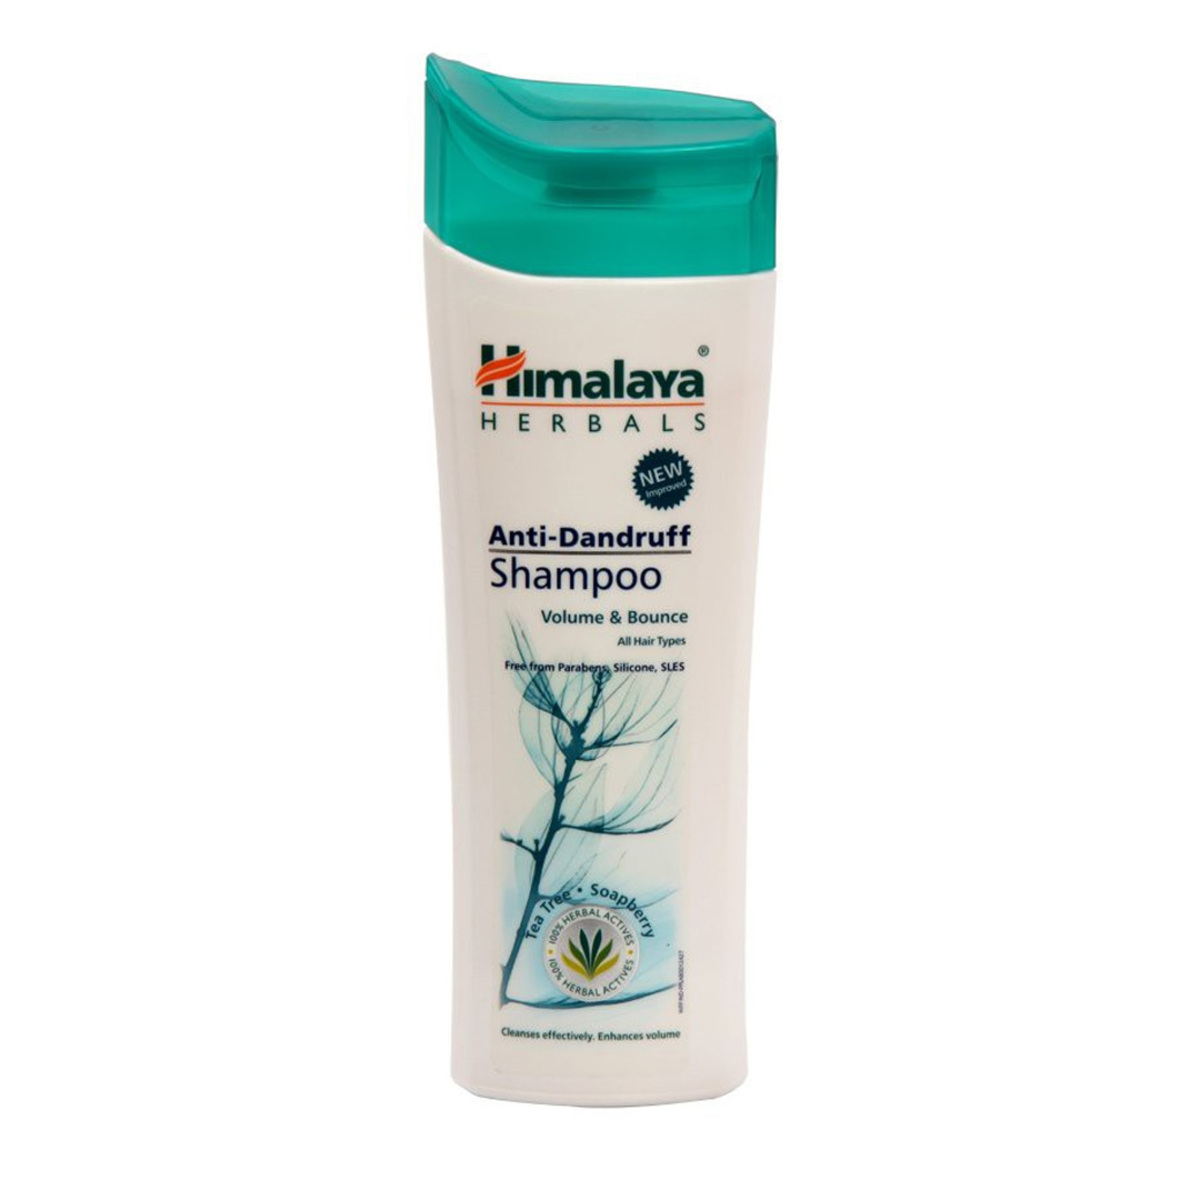 Himalaya Anti-Dandruff Volume & Bounce Shampoo 400ml